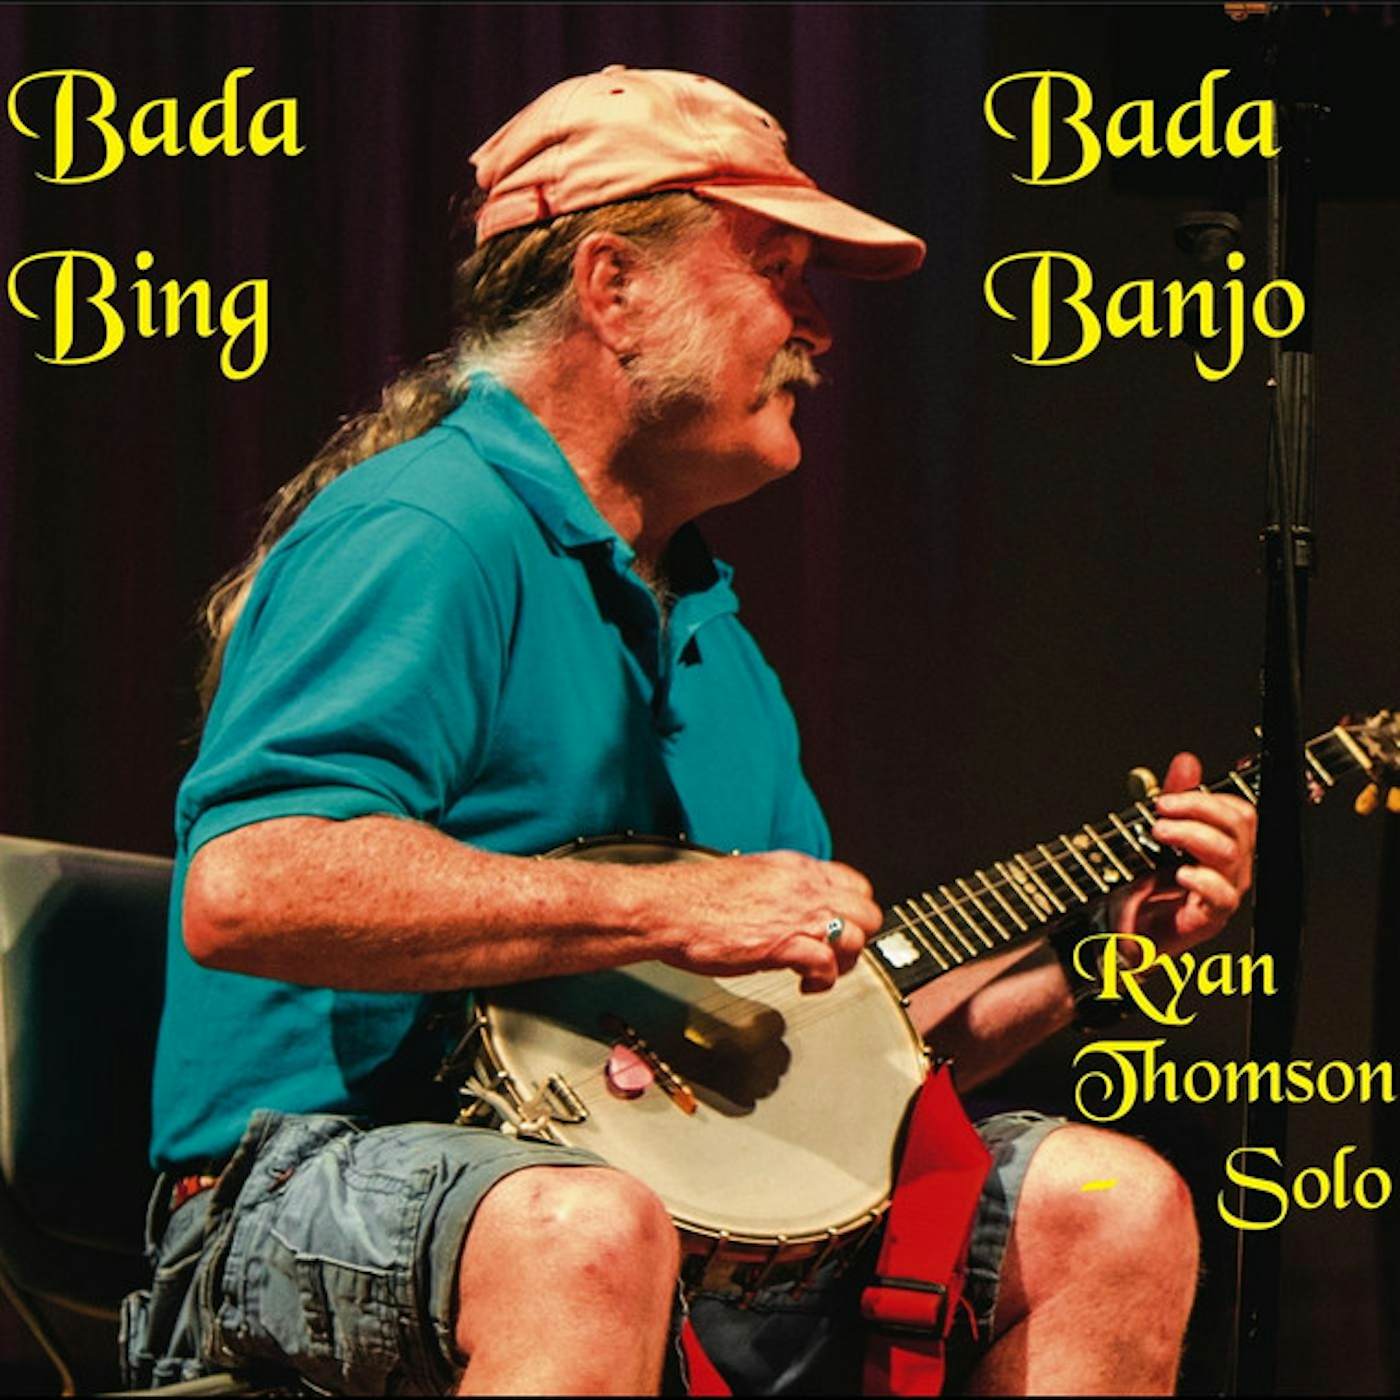 Ryan Thomson BADA BING BADA BANJO CD